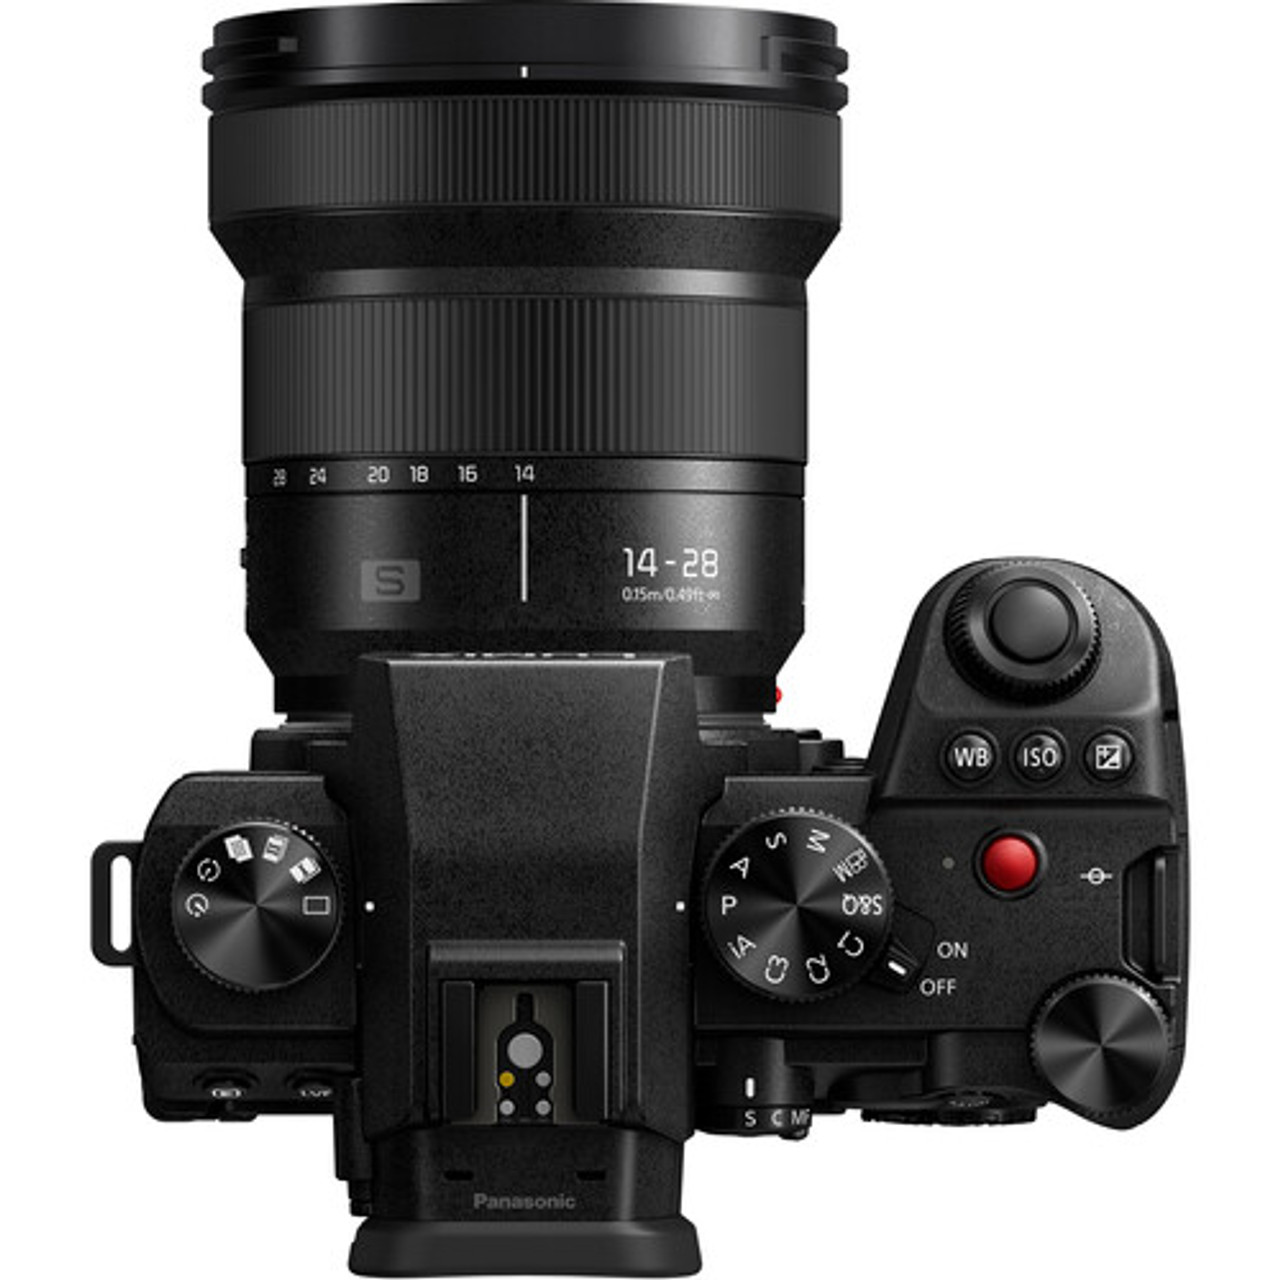 Vriendin Verpersoonlijking vernieuwen Panasonic Lumix 14-28mm f/4-5.6 MACRO Lens (Leica L) | Bedfords.com